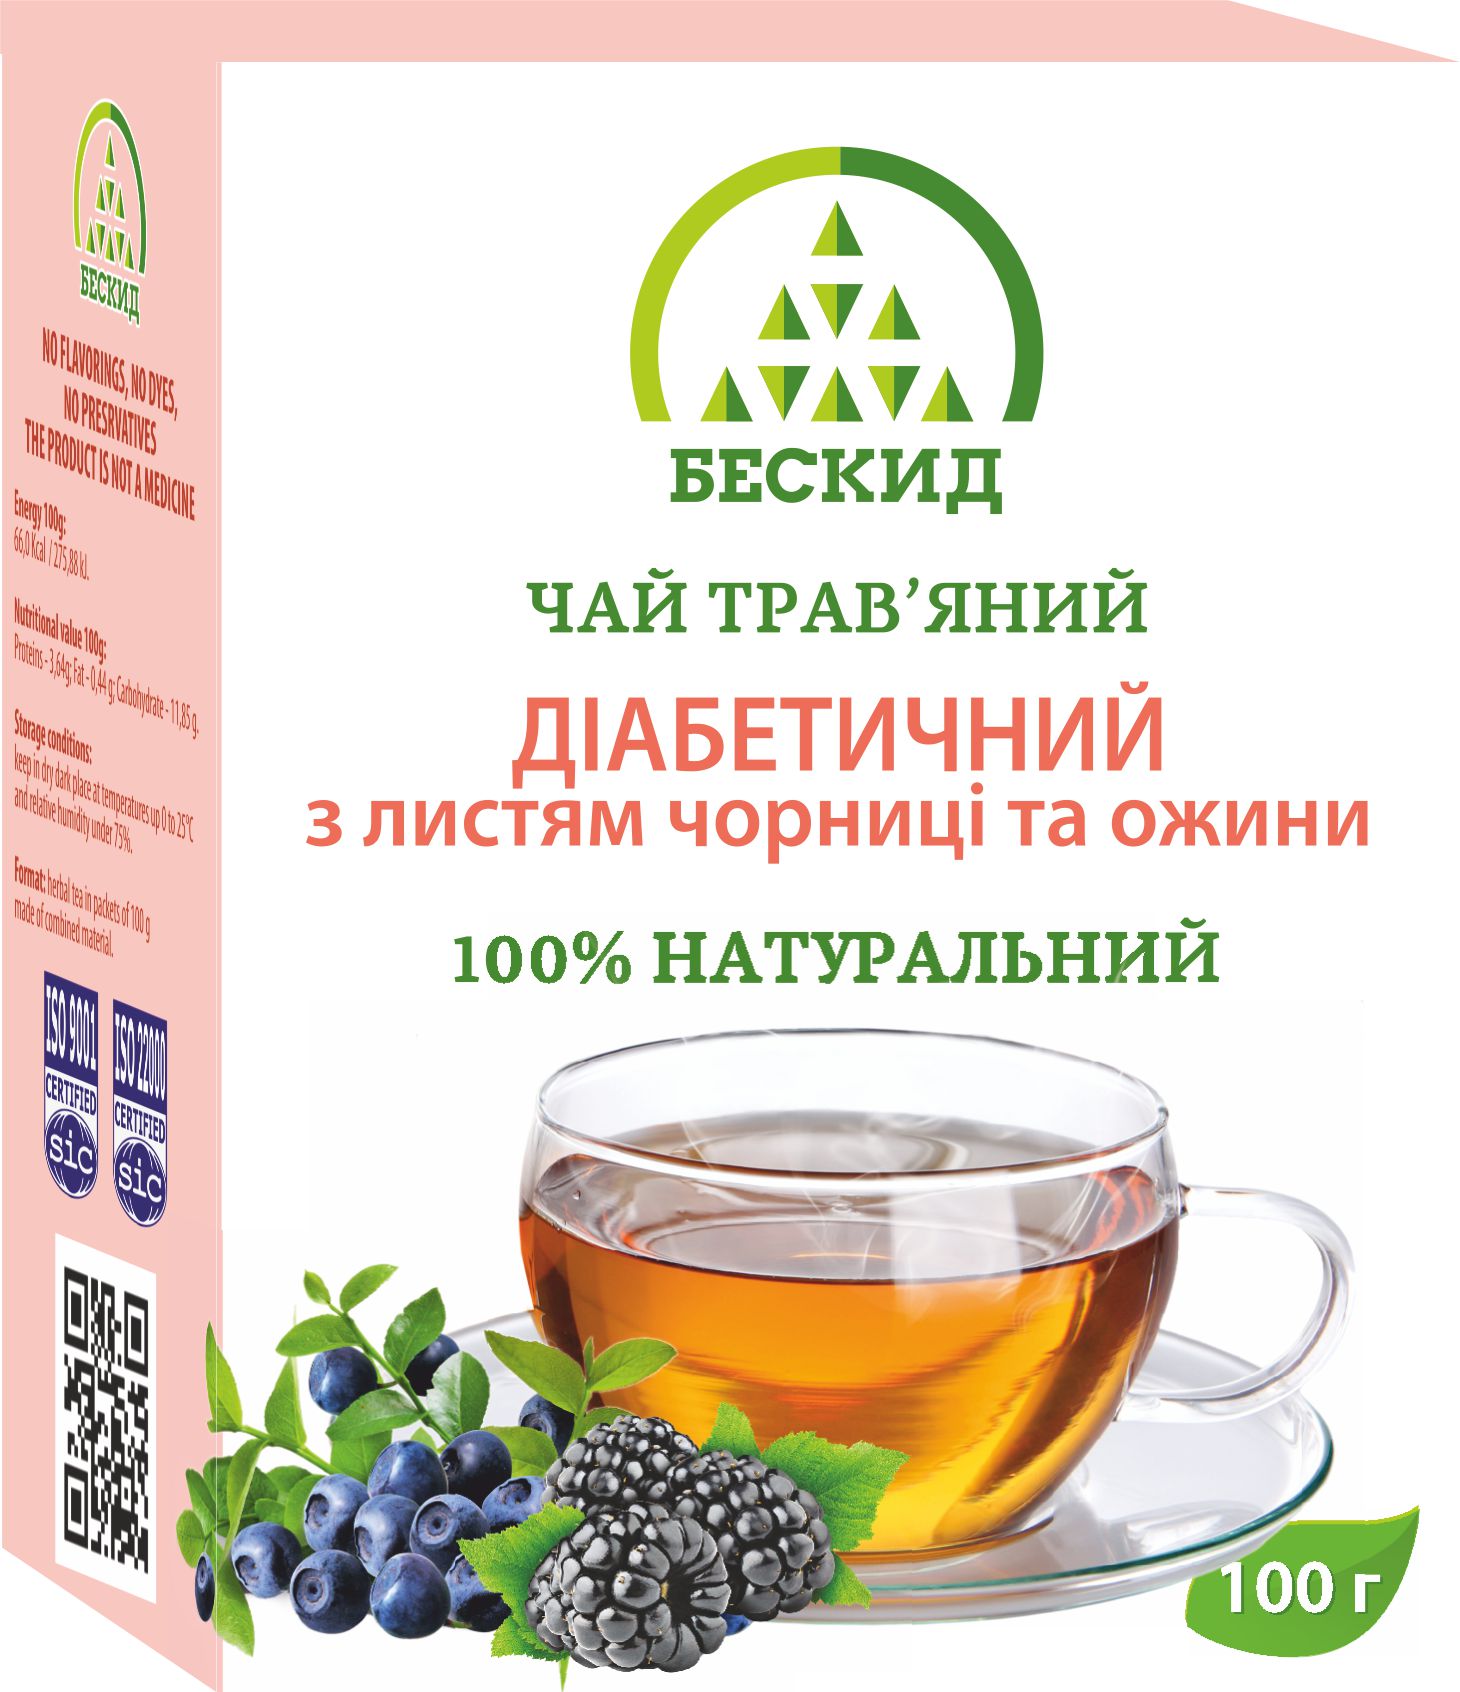 Чай травяной «Диабетический» с листьями черники и ежевики